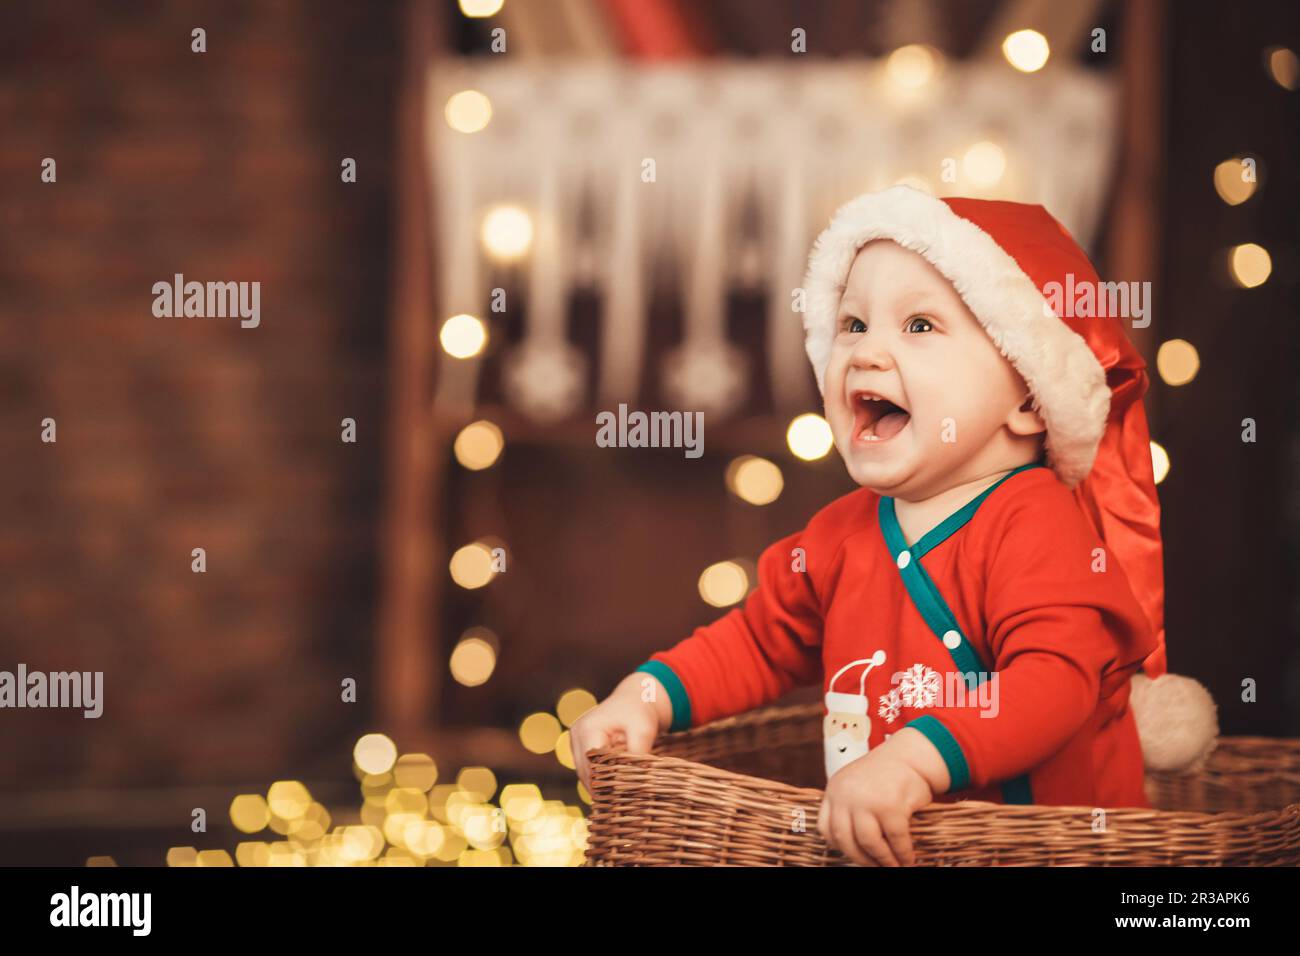 Petit garçon de père Noël dans un chapeau assis dans un panier en osier. Concept nouvel an et Noël Banque D'Images